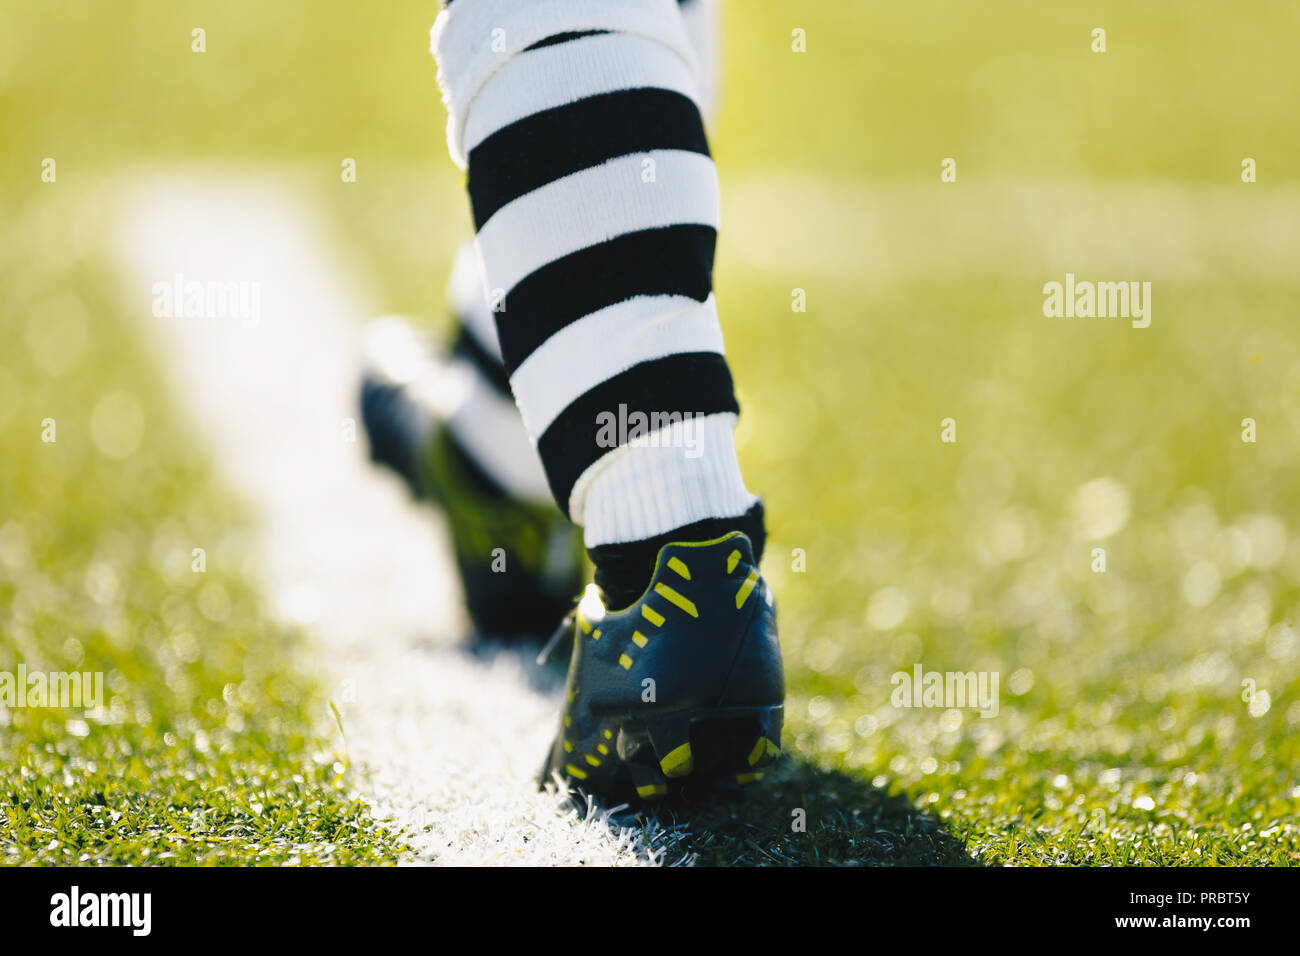 Les jambes d'un joueur de football. Joueur de football sur un terrain  d'herbe. Joueur de football en crampons et chaussures de football  professionnel de soccer à rayures chaussettes Photo Stock - Alamy